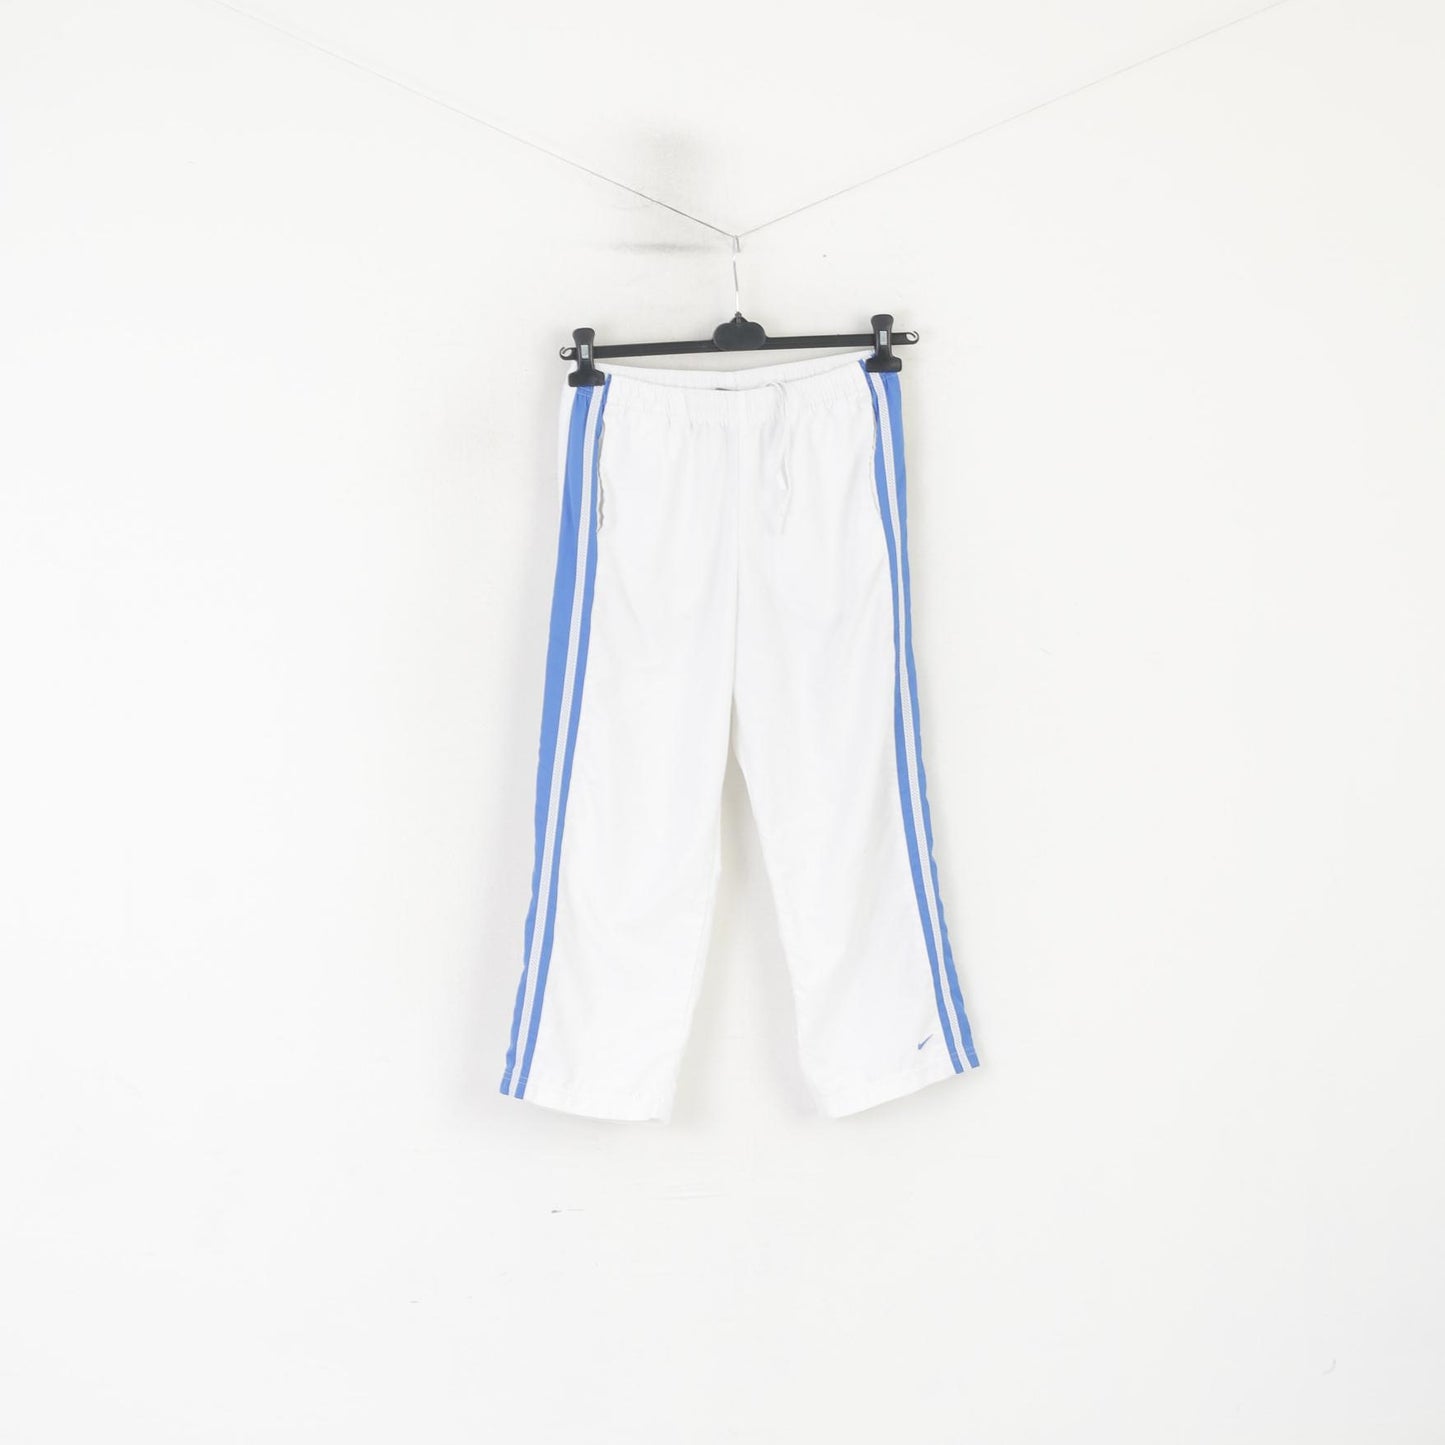 Nike Women 8-10 M Capri Pants White Sportswear Drawstring Waist Shorts